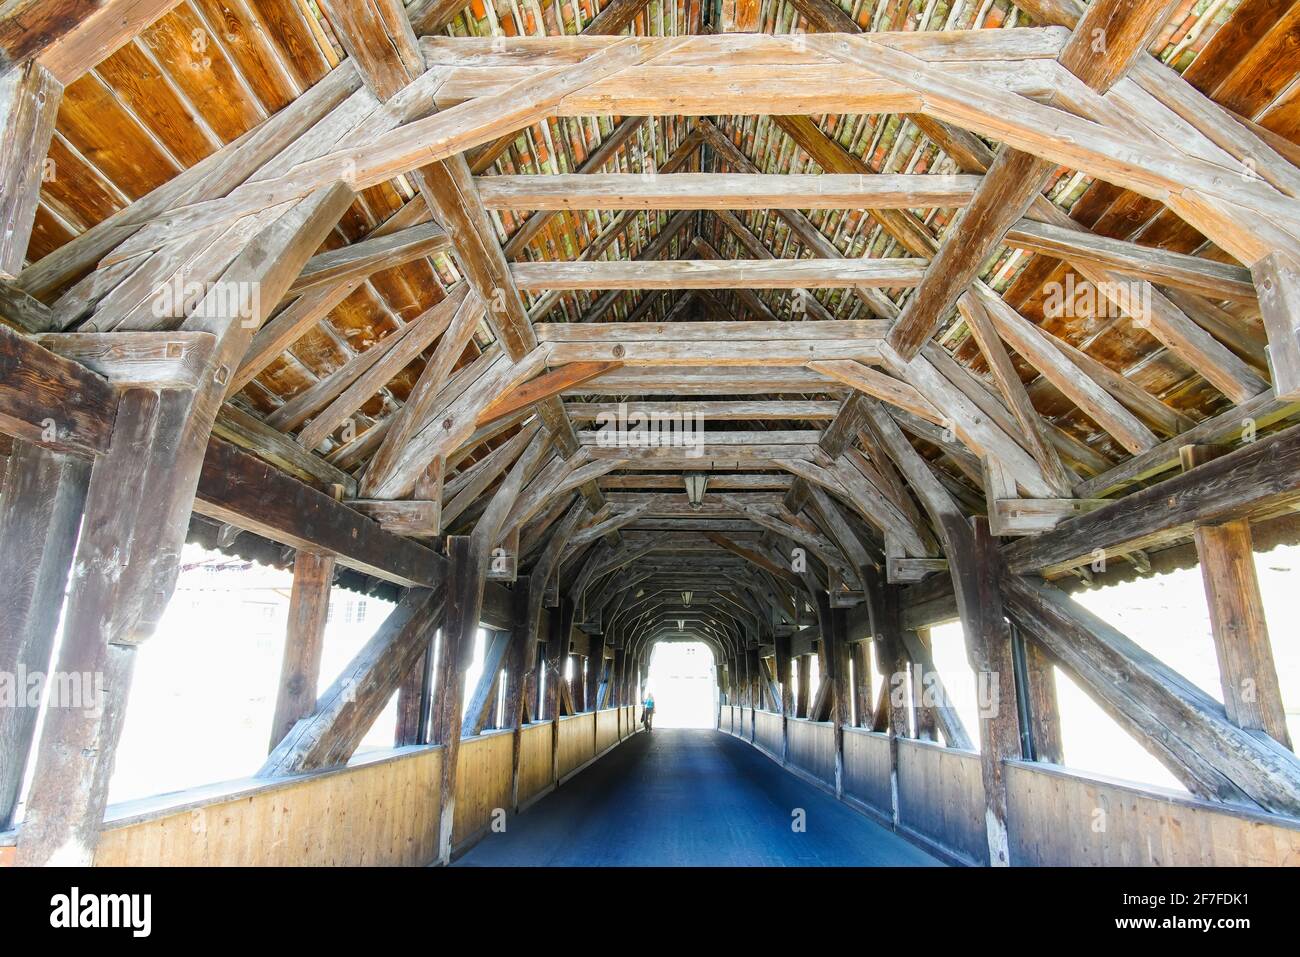 Pont de Berne : le plus ancien pont de Fribourg, toujours en bois. À l'origine, le pont tel qu'il est aujourd'hui date de 1653. Canton de Fribourg, Suisse. Banque D'Images